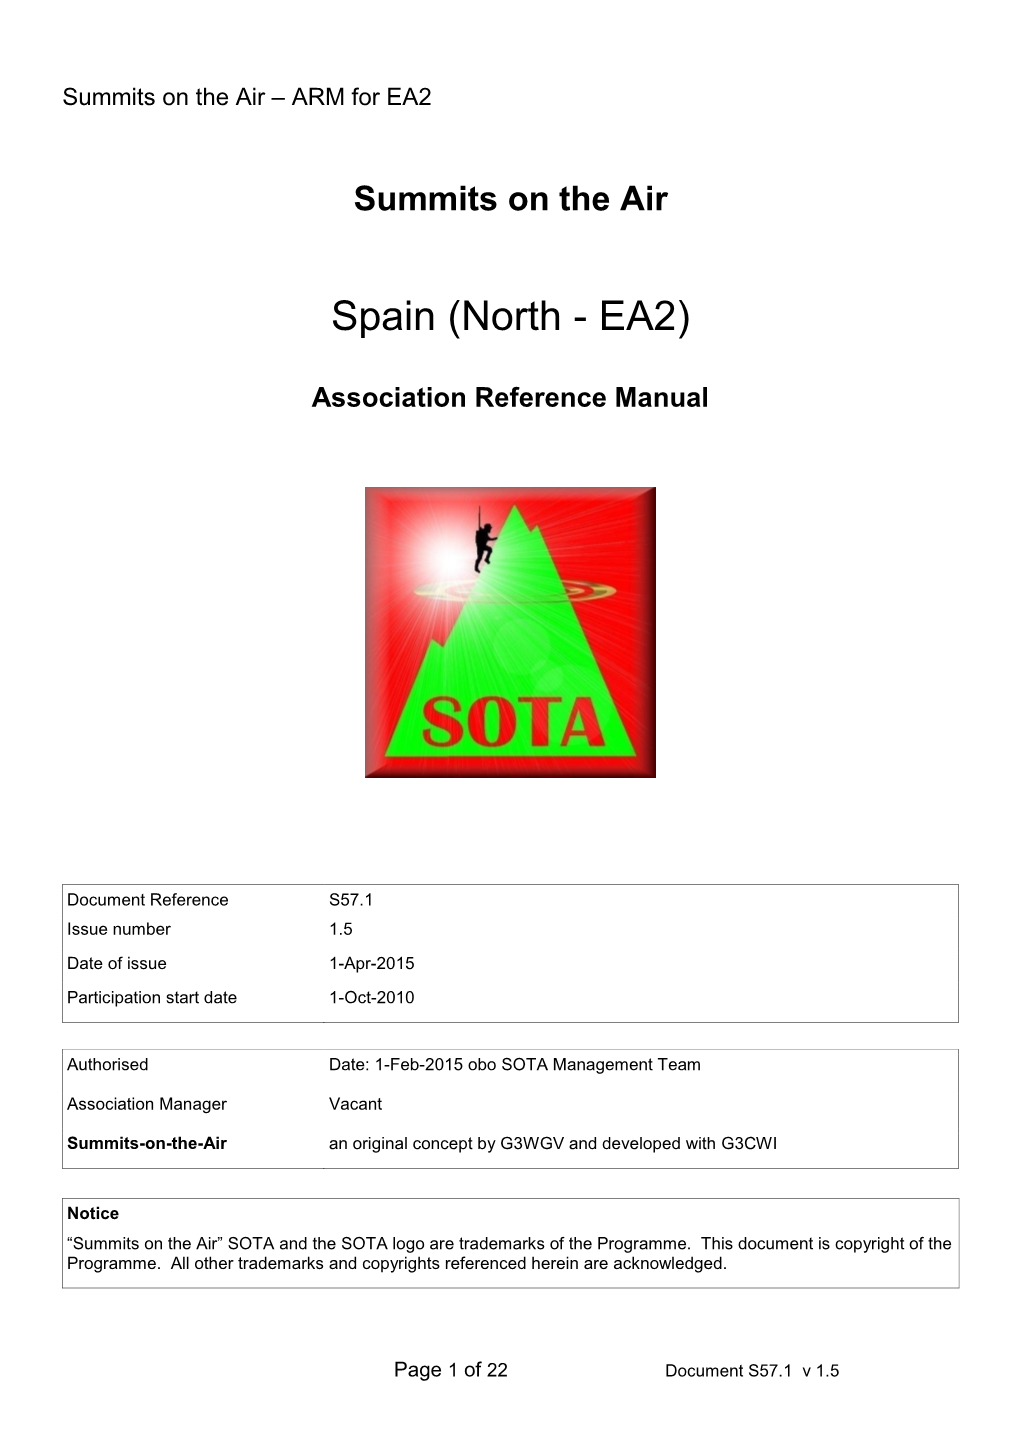 Spain (North - EA2)